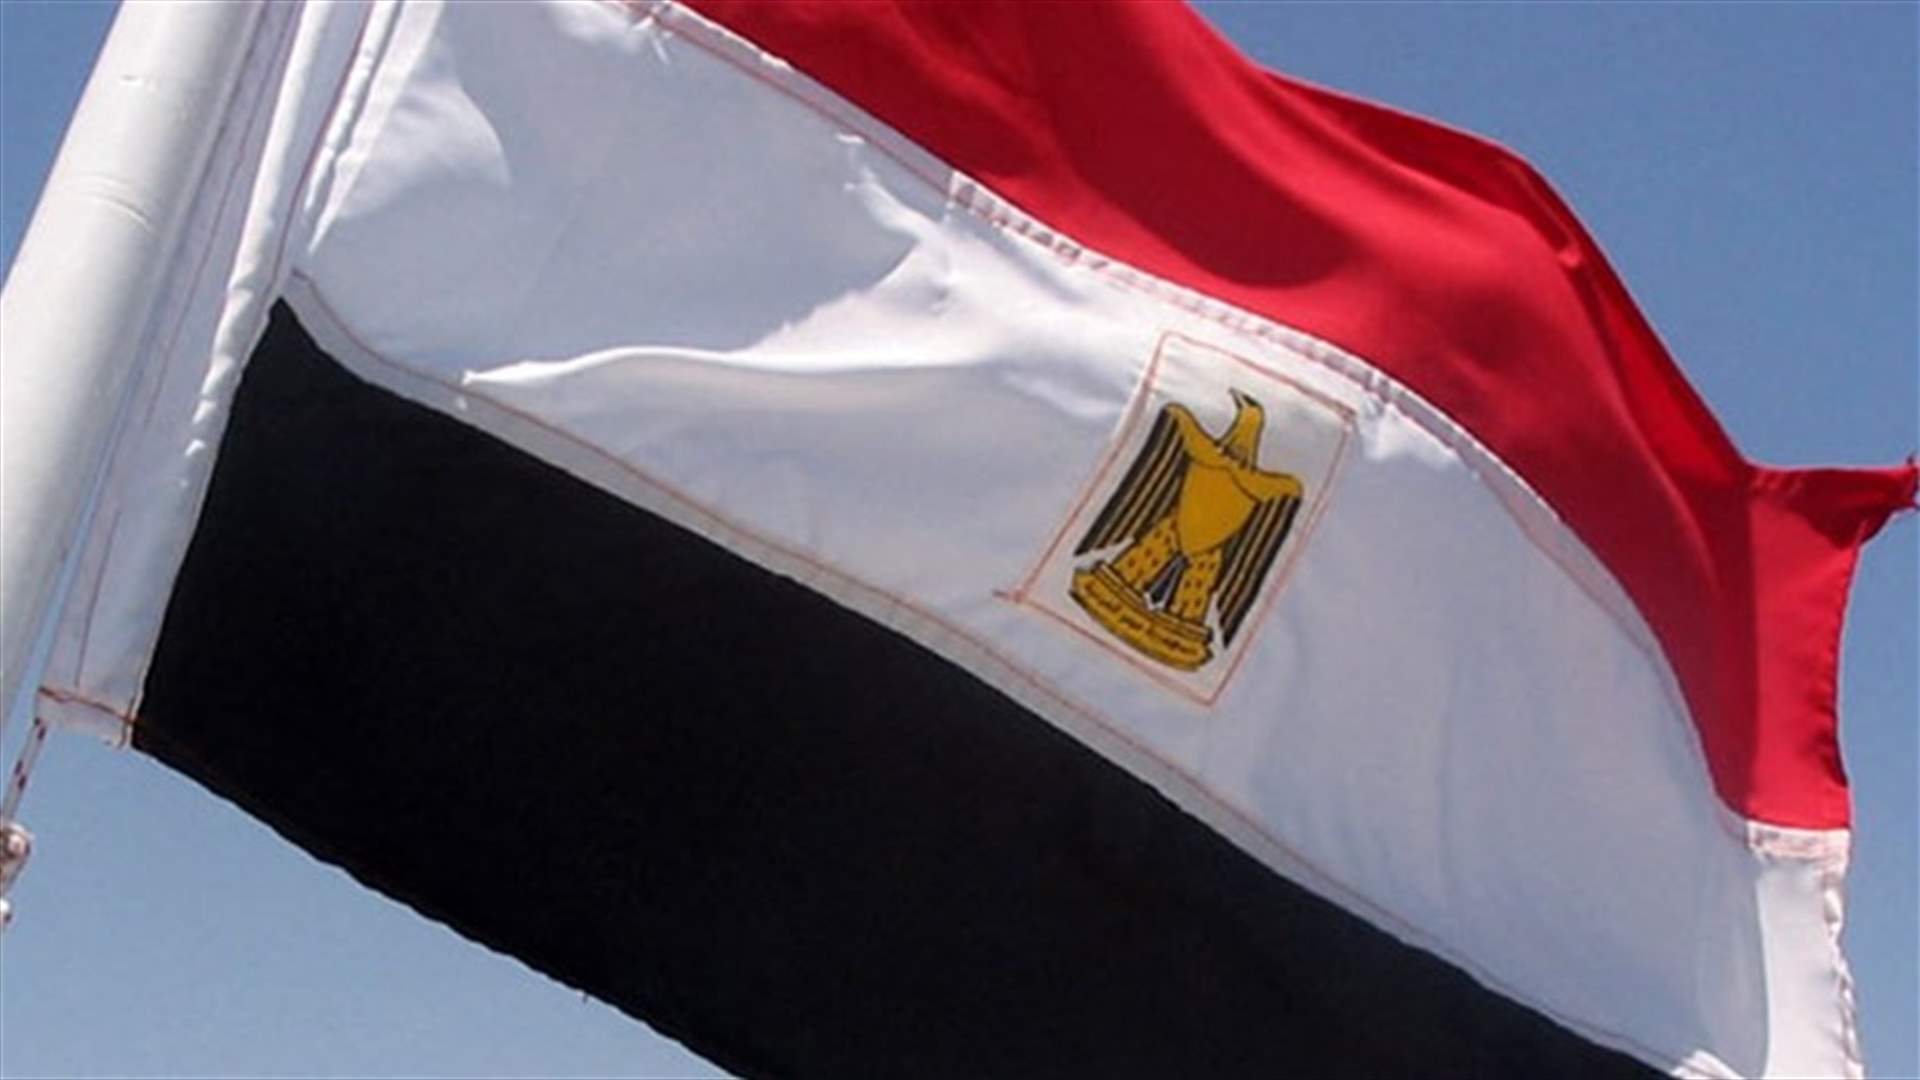 مقتل ضابط في الشرطة بالرصاص في شمال سيناء...وداعش يتبنى 